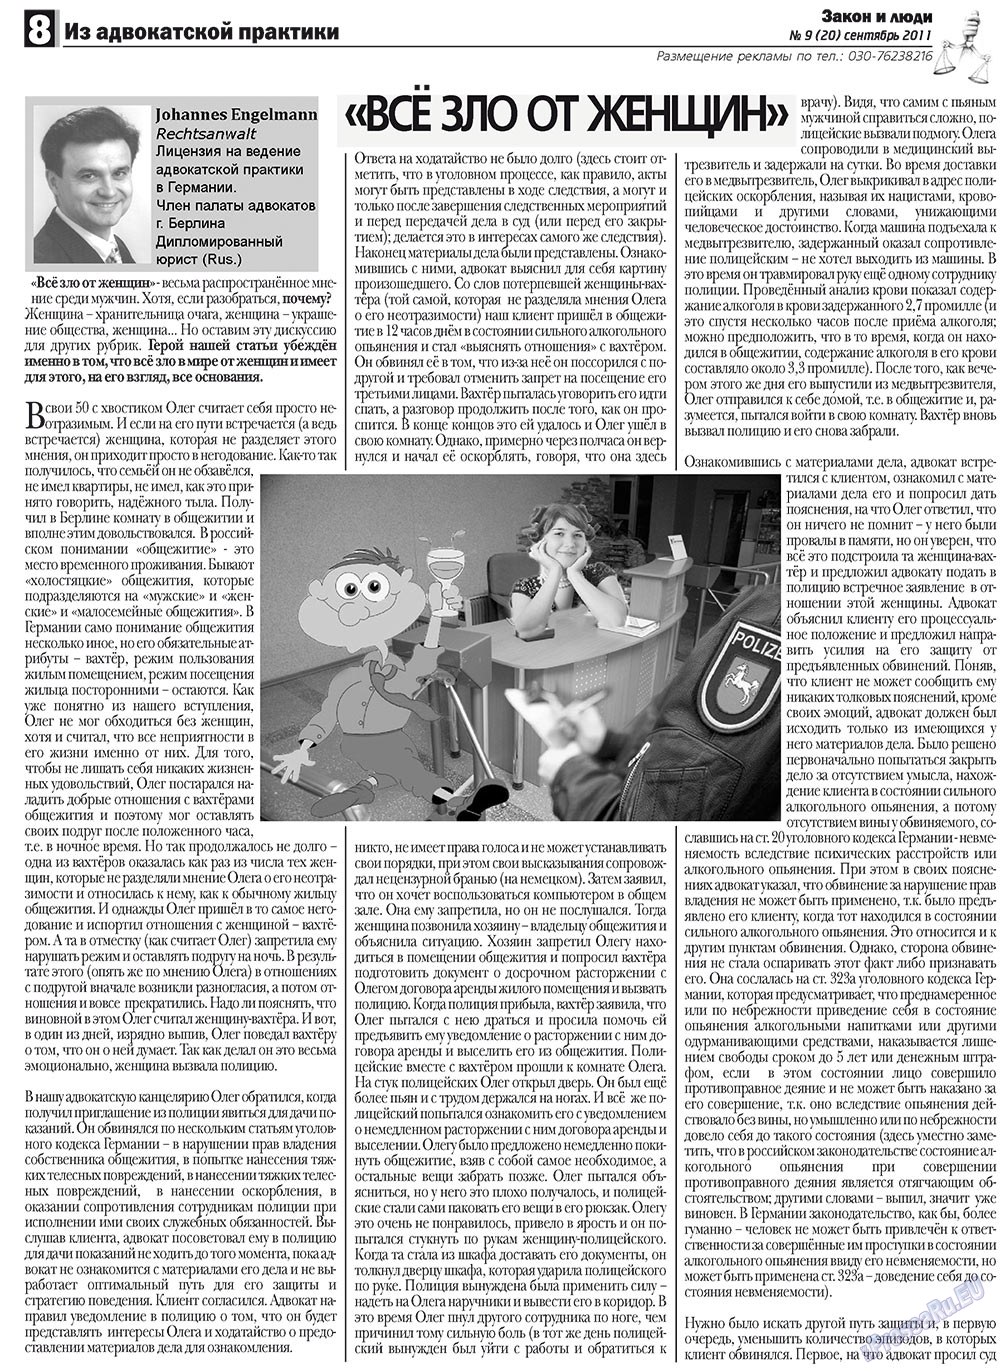 Закон и люди (газета). 2011 год, номер 9, стр. 8